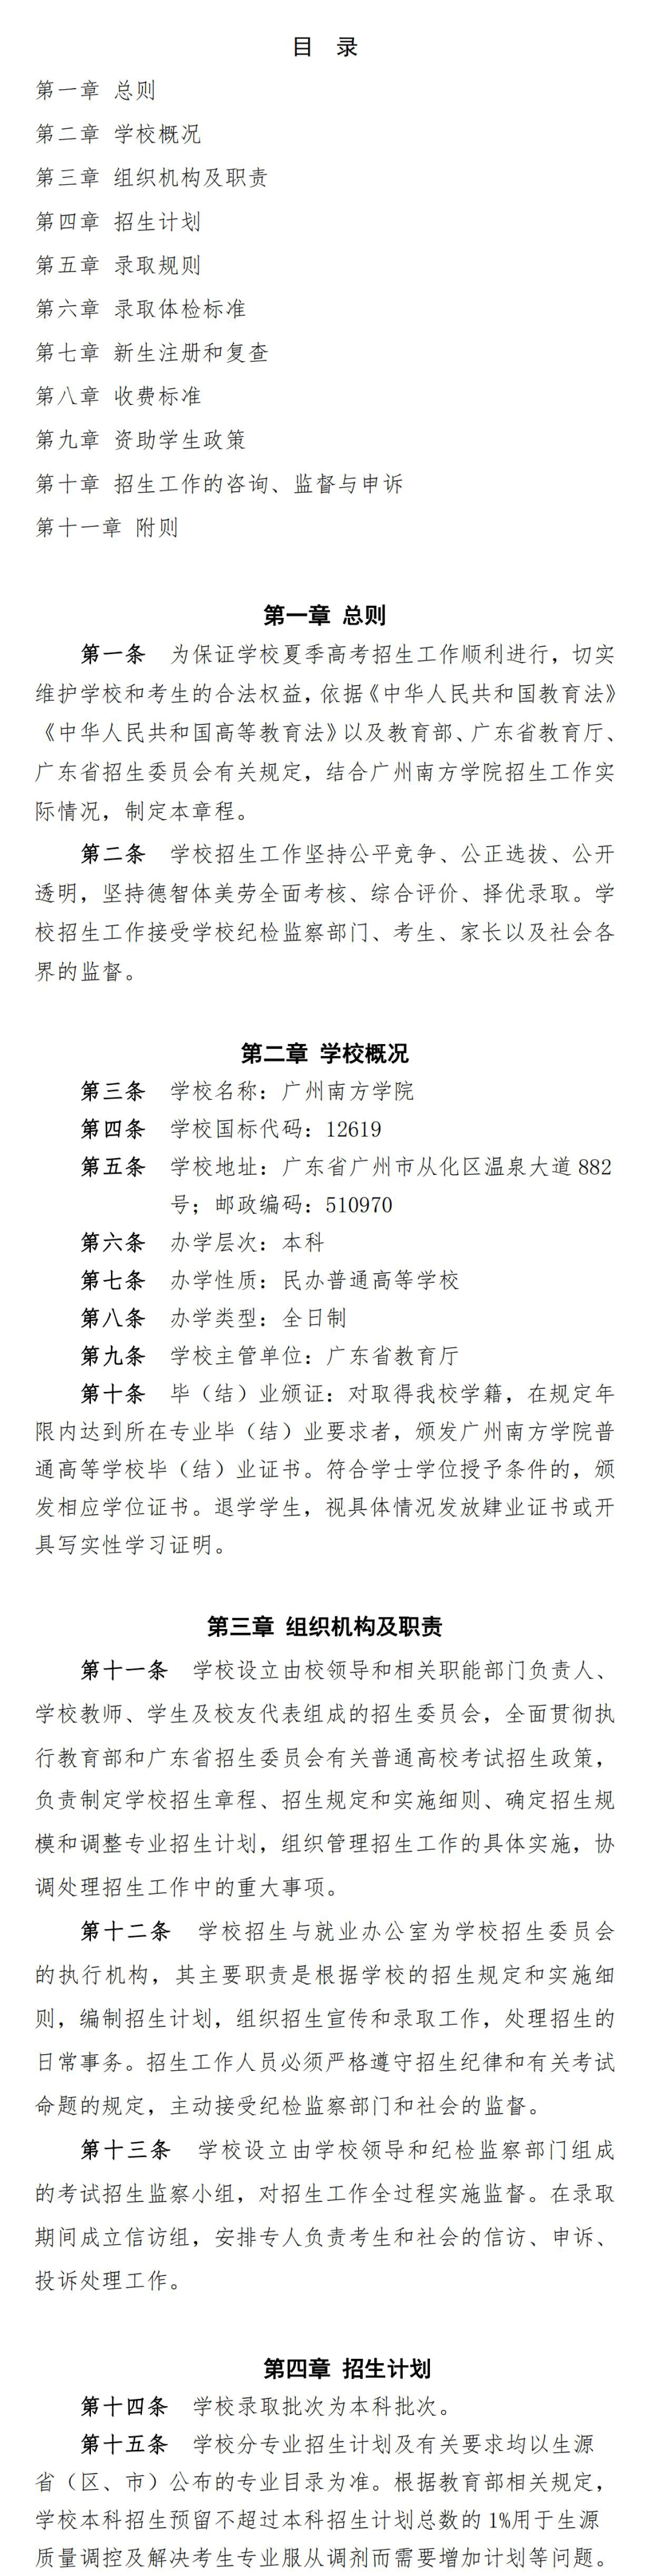 广州南方学院2022年夏季高考招生章程